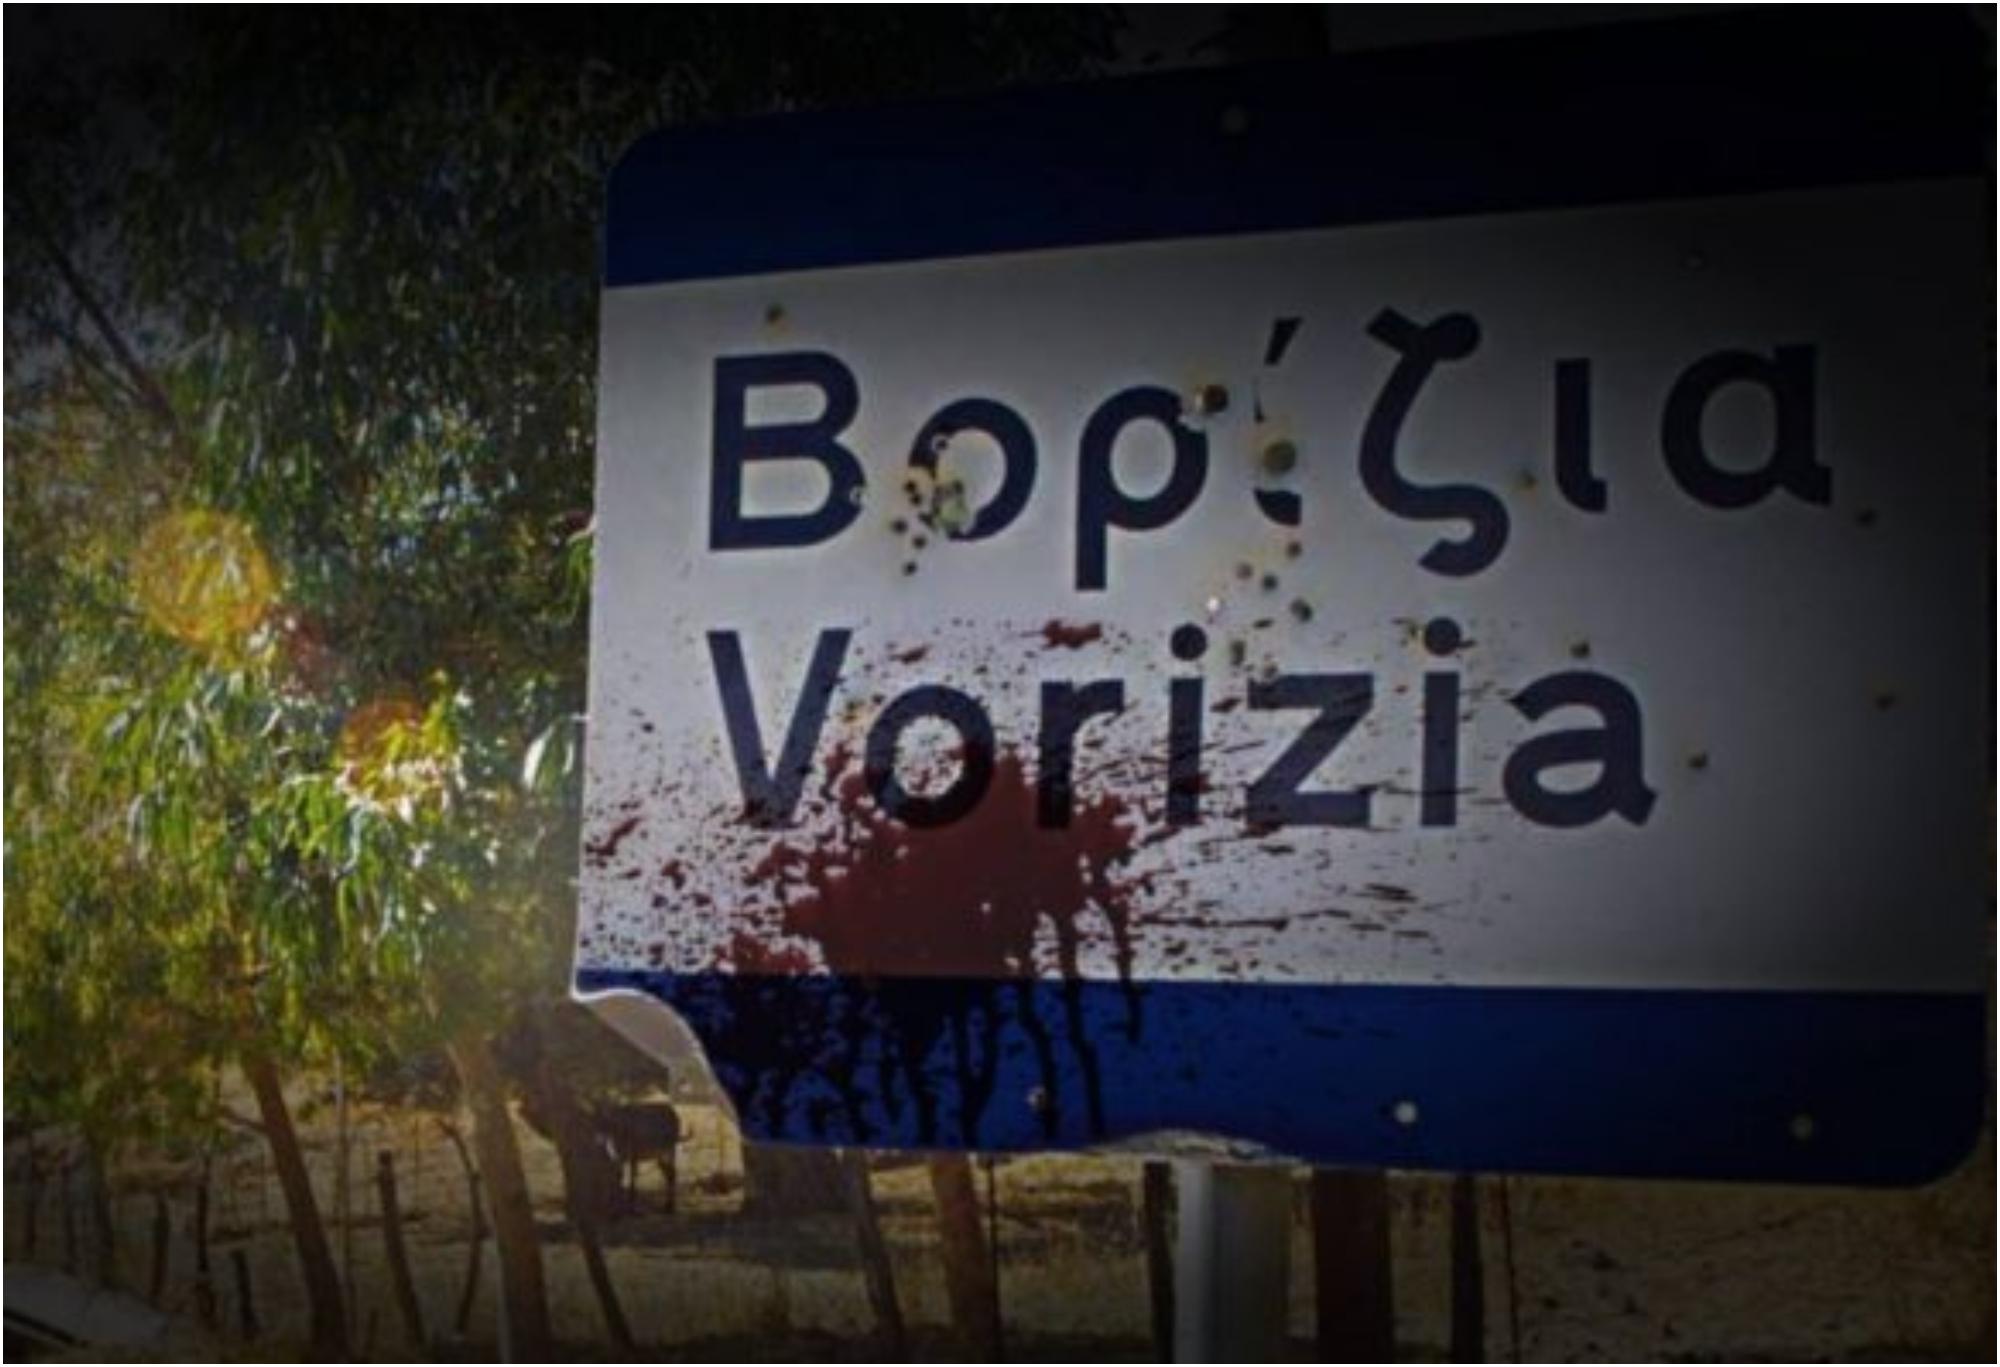 Βορίζια ένα χωριό πεδίο μάχης: Το αιματηρό πανηγύρι με την πολύνεκρη Κρητική βεντέτα που συγκλόνισε το πανελλήνιο και προκάλεσε την επέμβαση του Στρατού